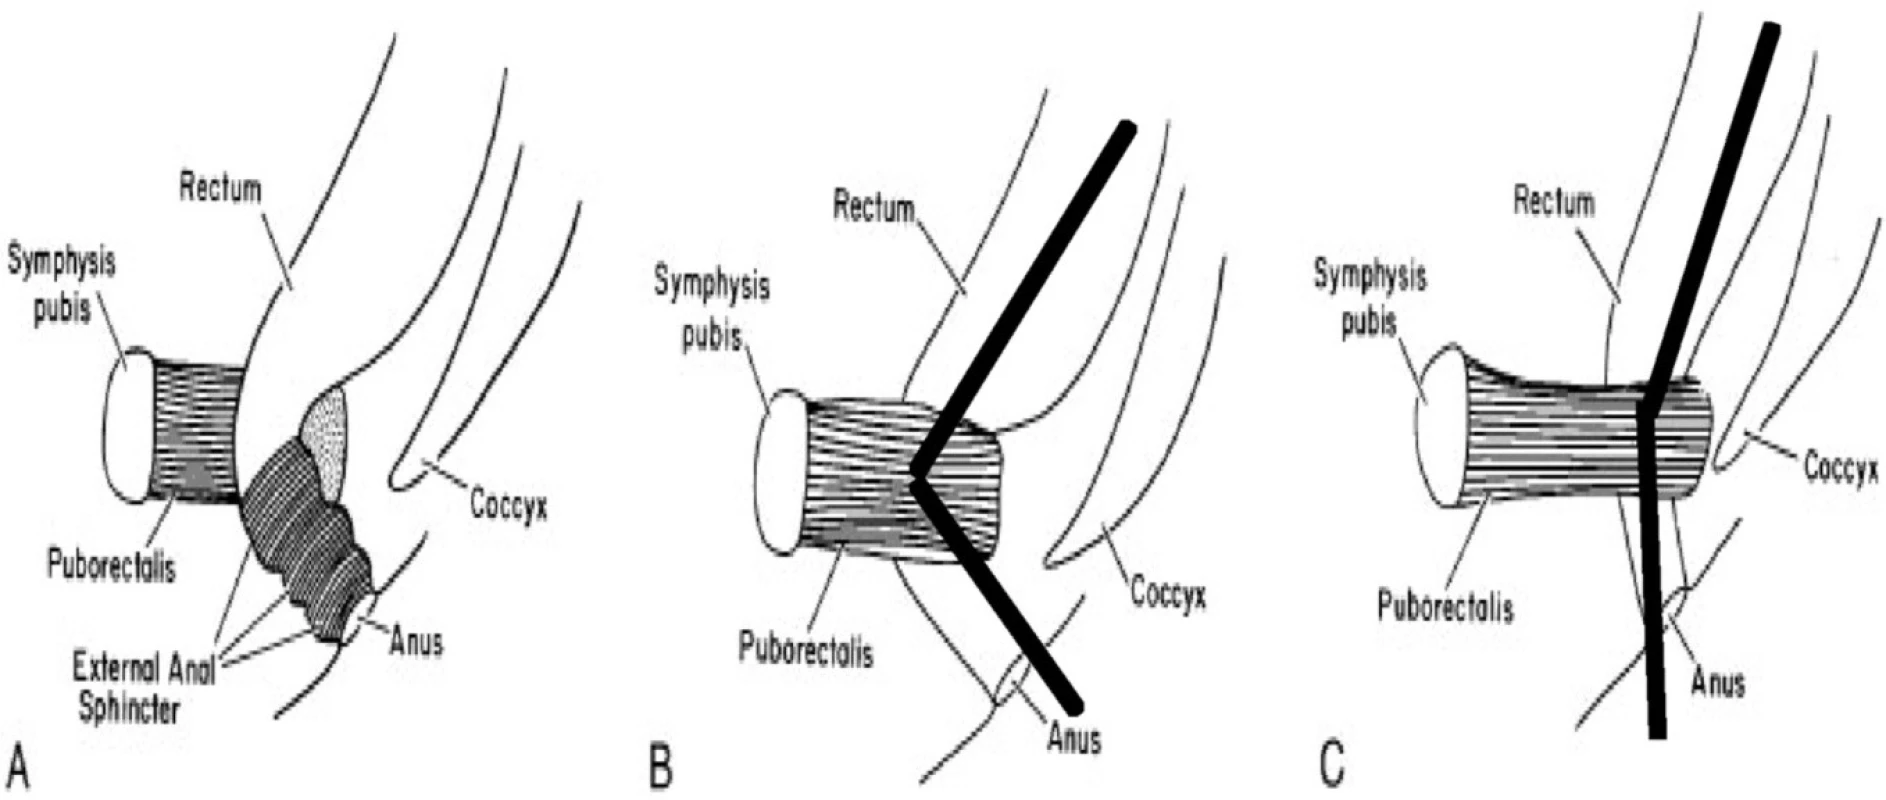 Mechanismus relaxace svalů pánevního dna při defekaci
A (vlevo): rektum a kontrahovaný m. puborectalis, ostrý anorektální úhel a zevní svěrač
B (uprostřed): klidový stav – kontrahovaný m. puborectalis a ostrý anorektální úhel
C (vpravo): defekace – relaxace m. puborectalis a napfiímení anorektálního úhlu